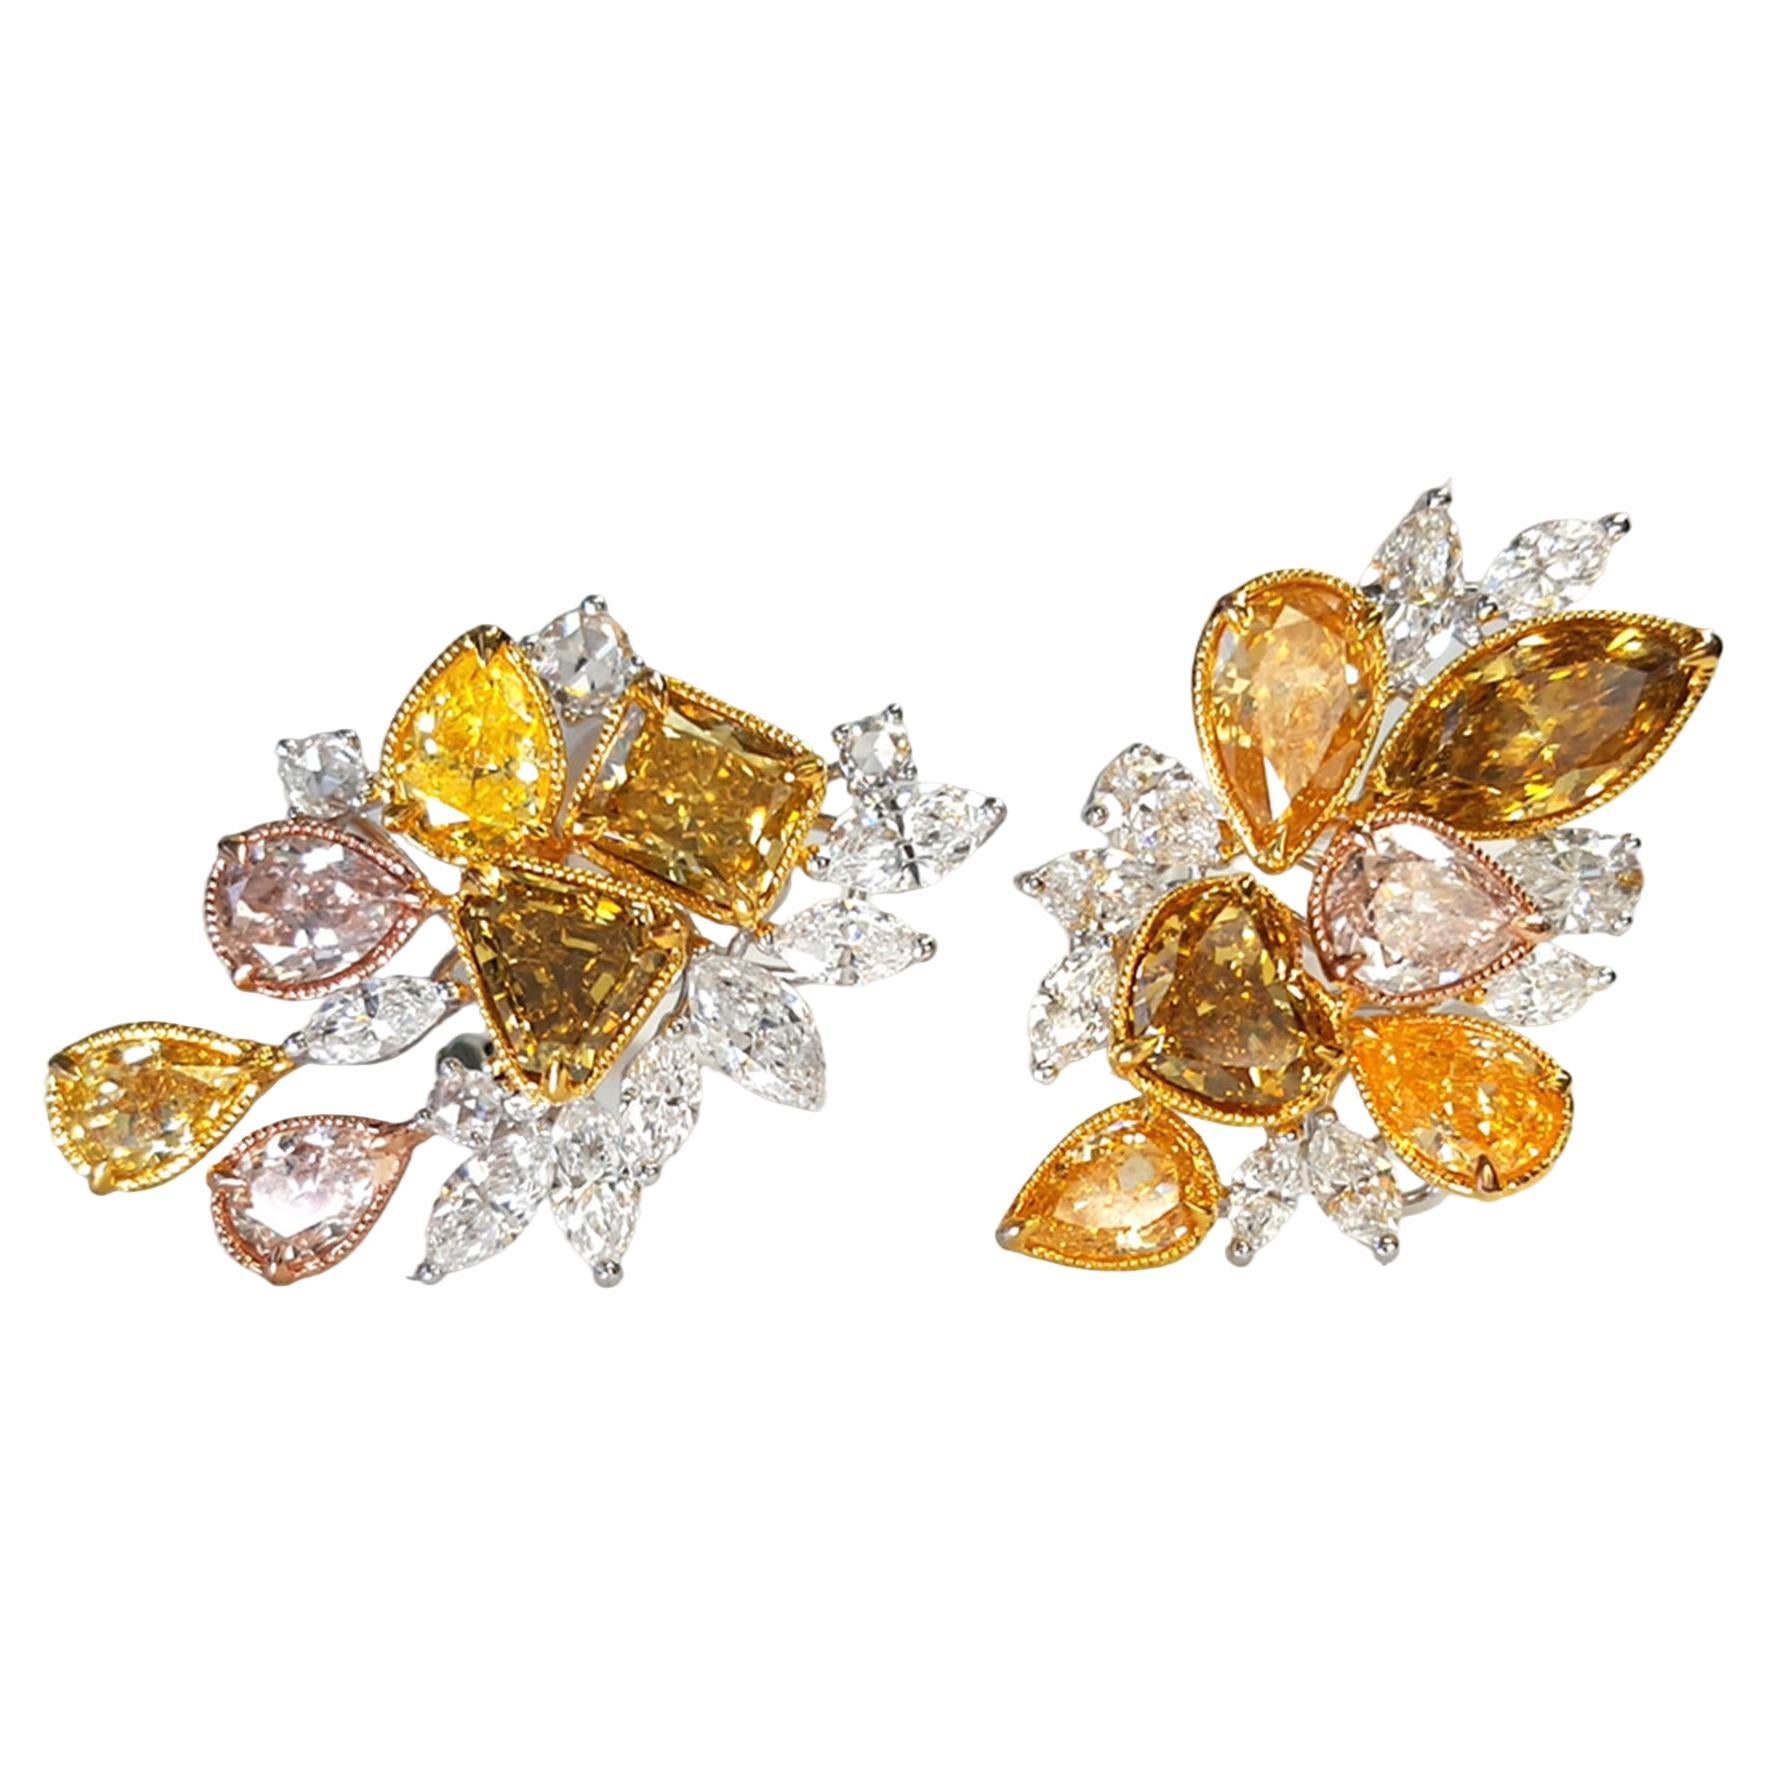 8 Karat mehrfarbige Diamant-Cluster-Ohrringe, 18 Karat Wei- und Gelbgold